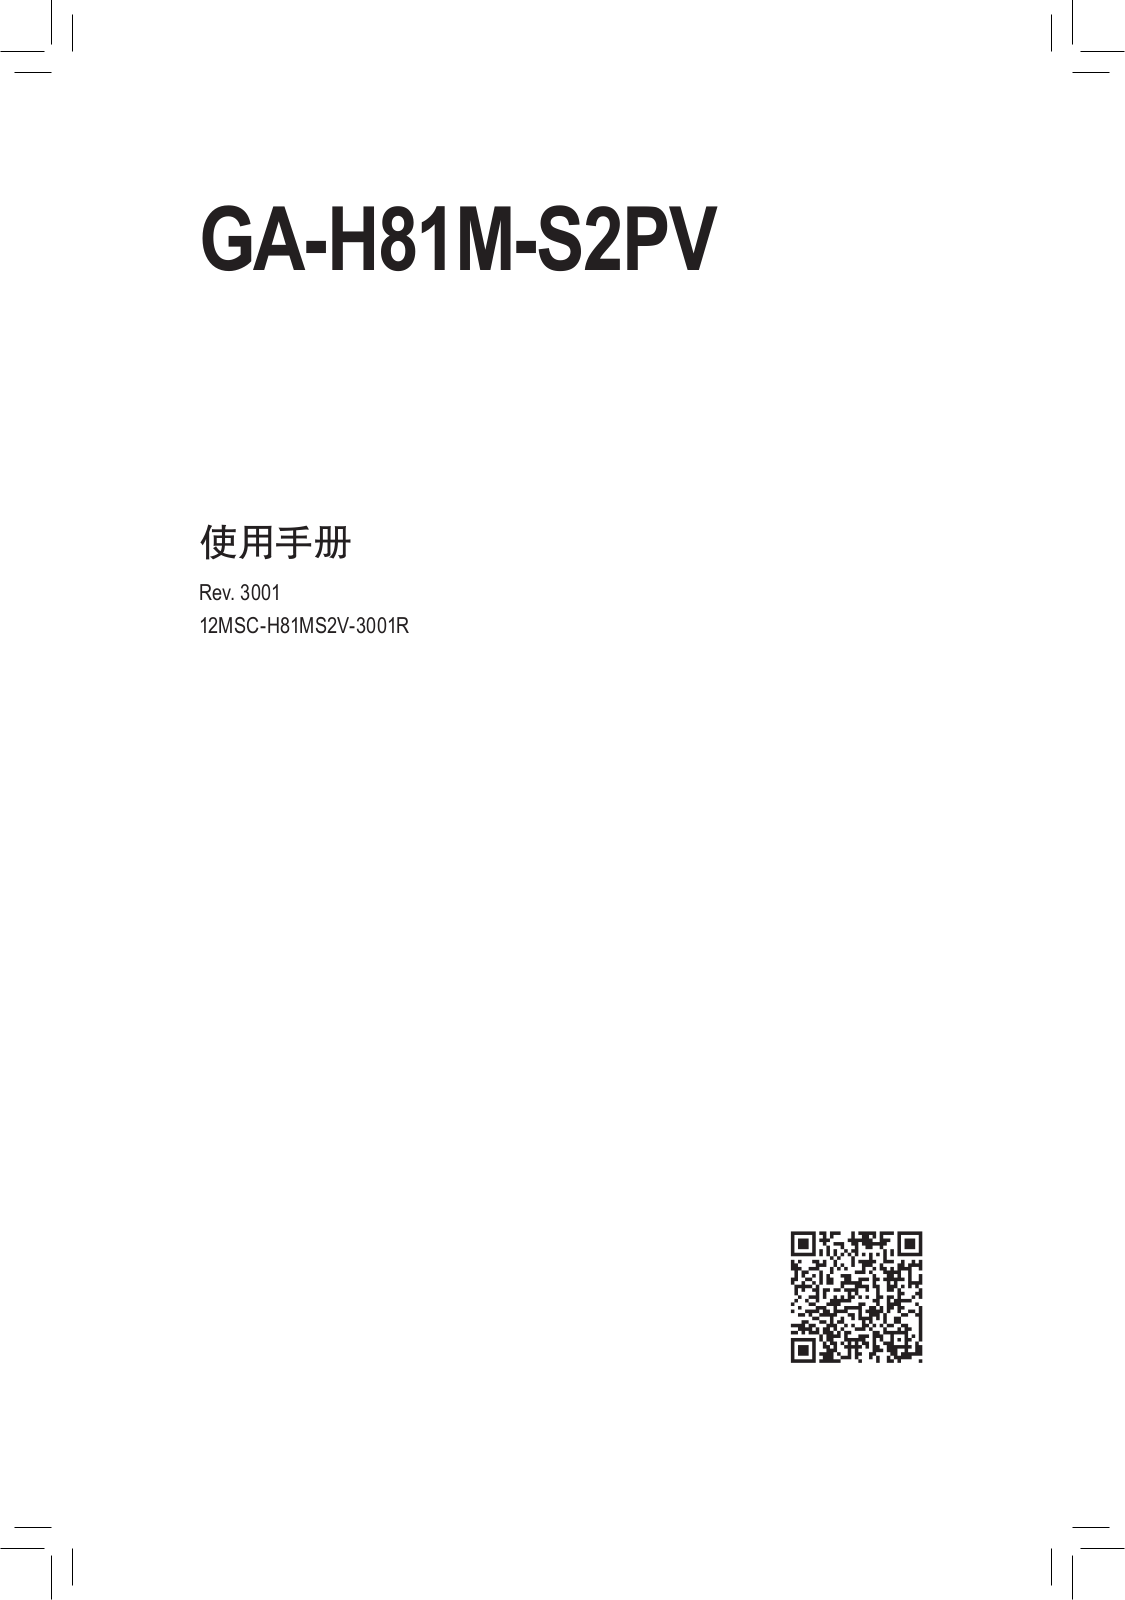 Gigabyte GA-H81M-S2PV User Manual